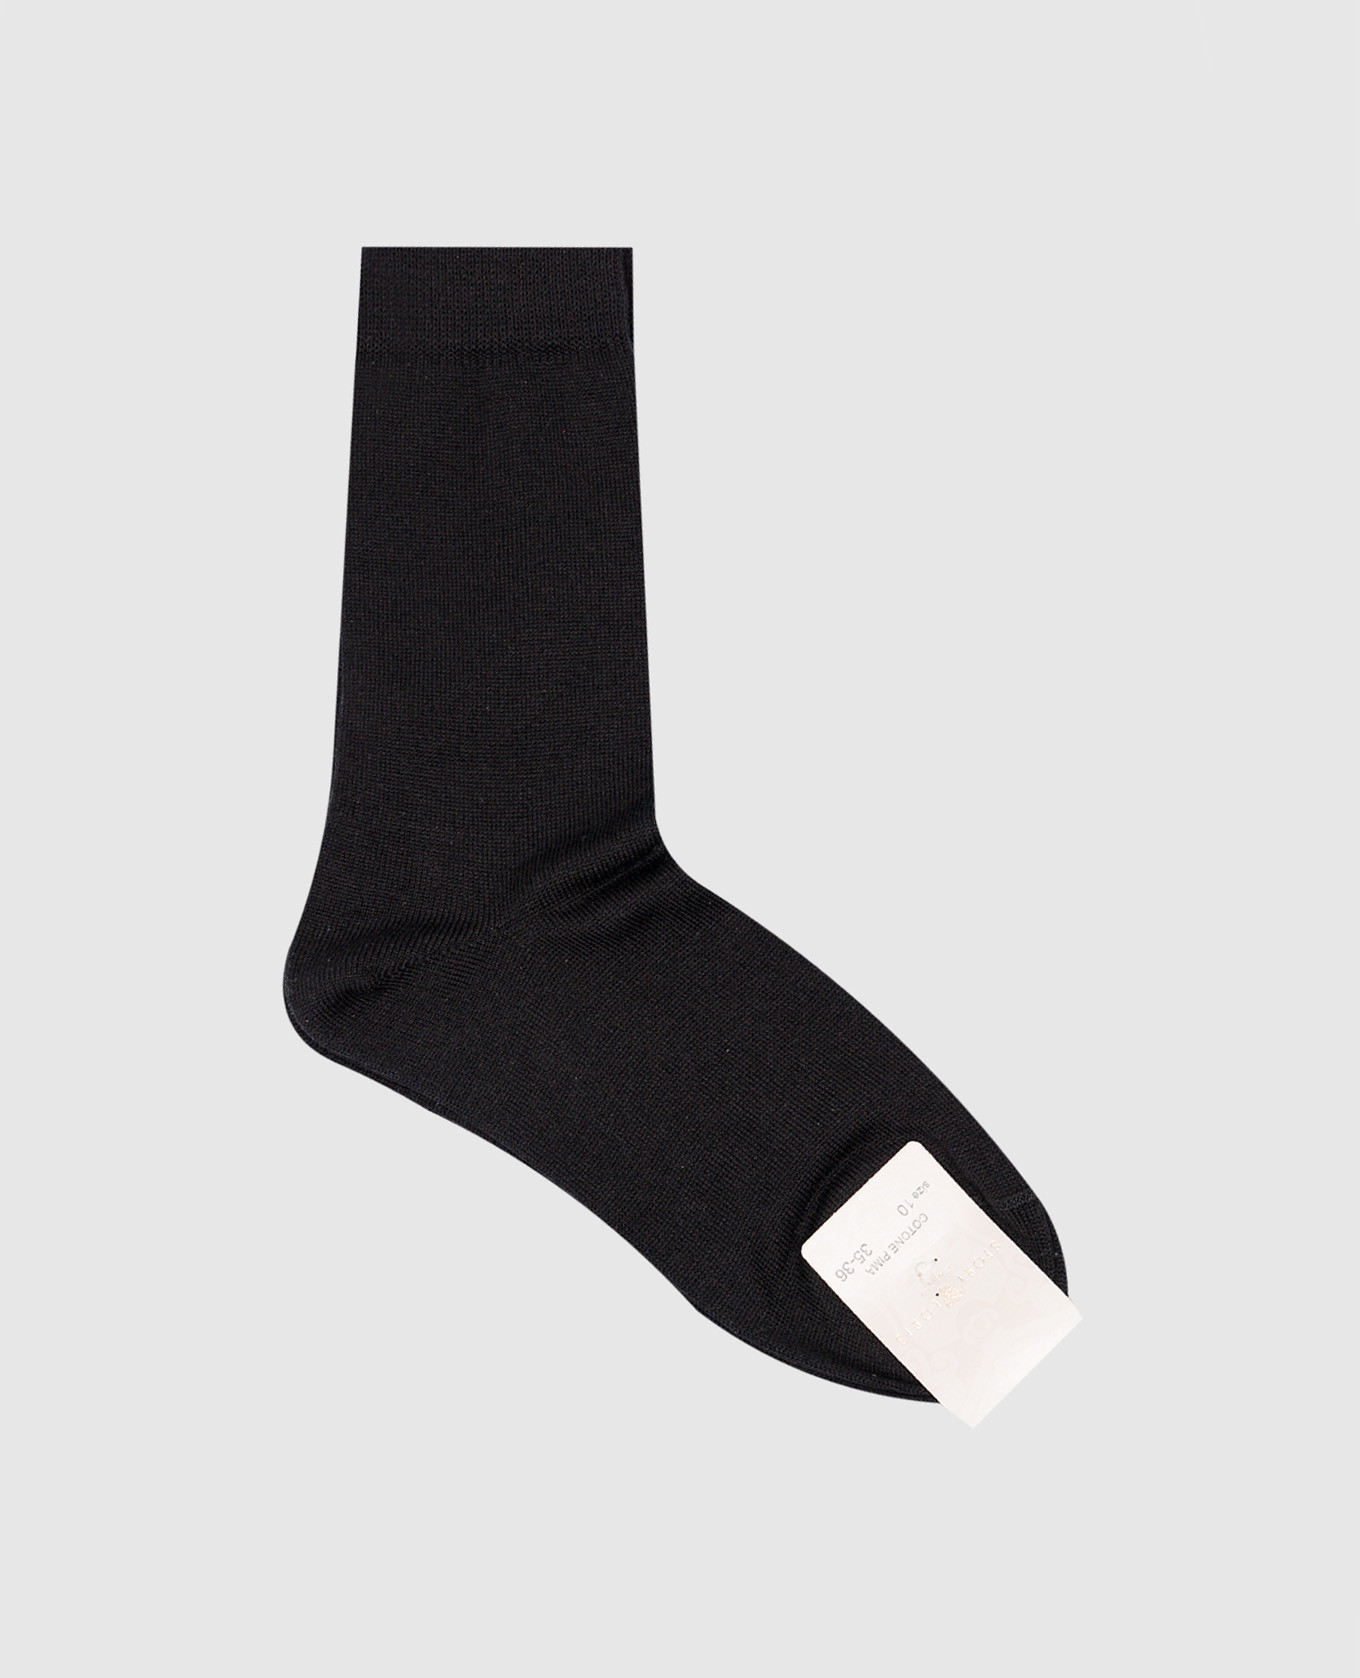 Children's black socks